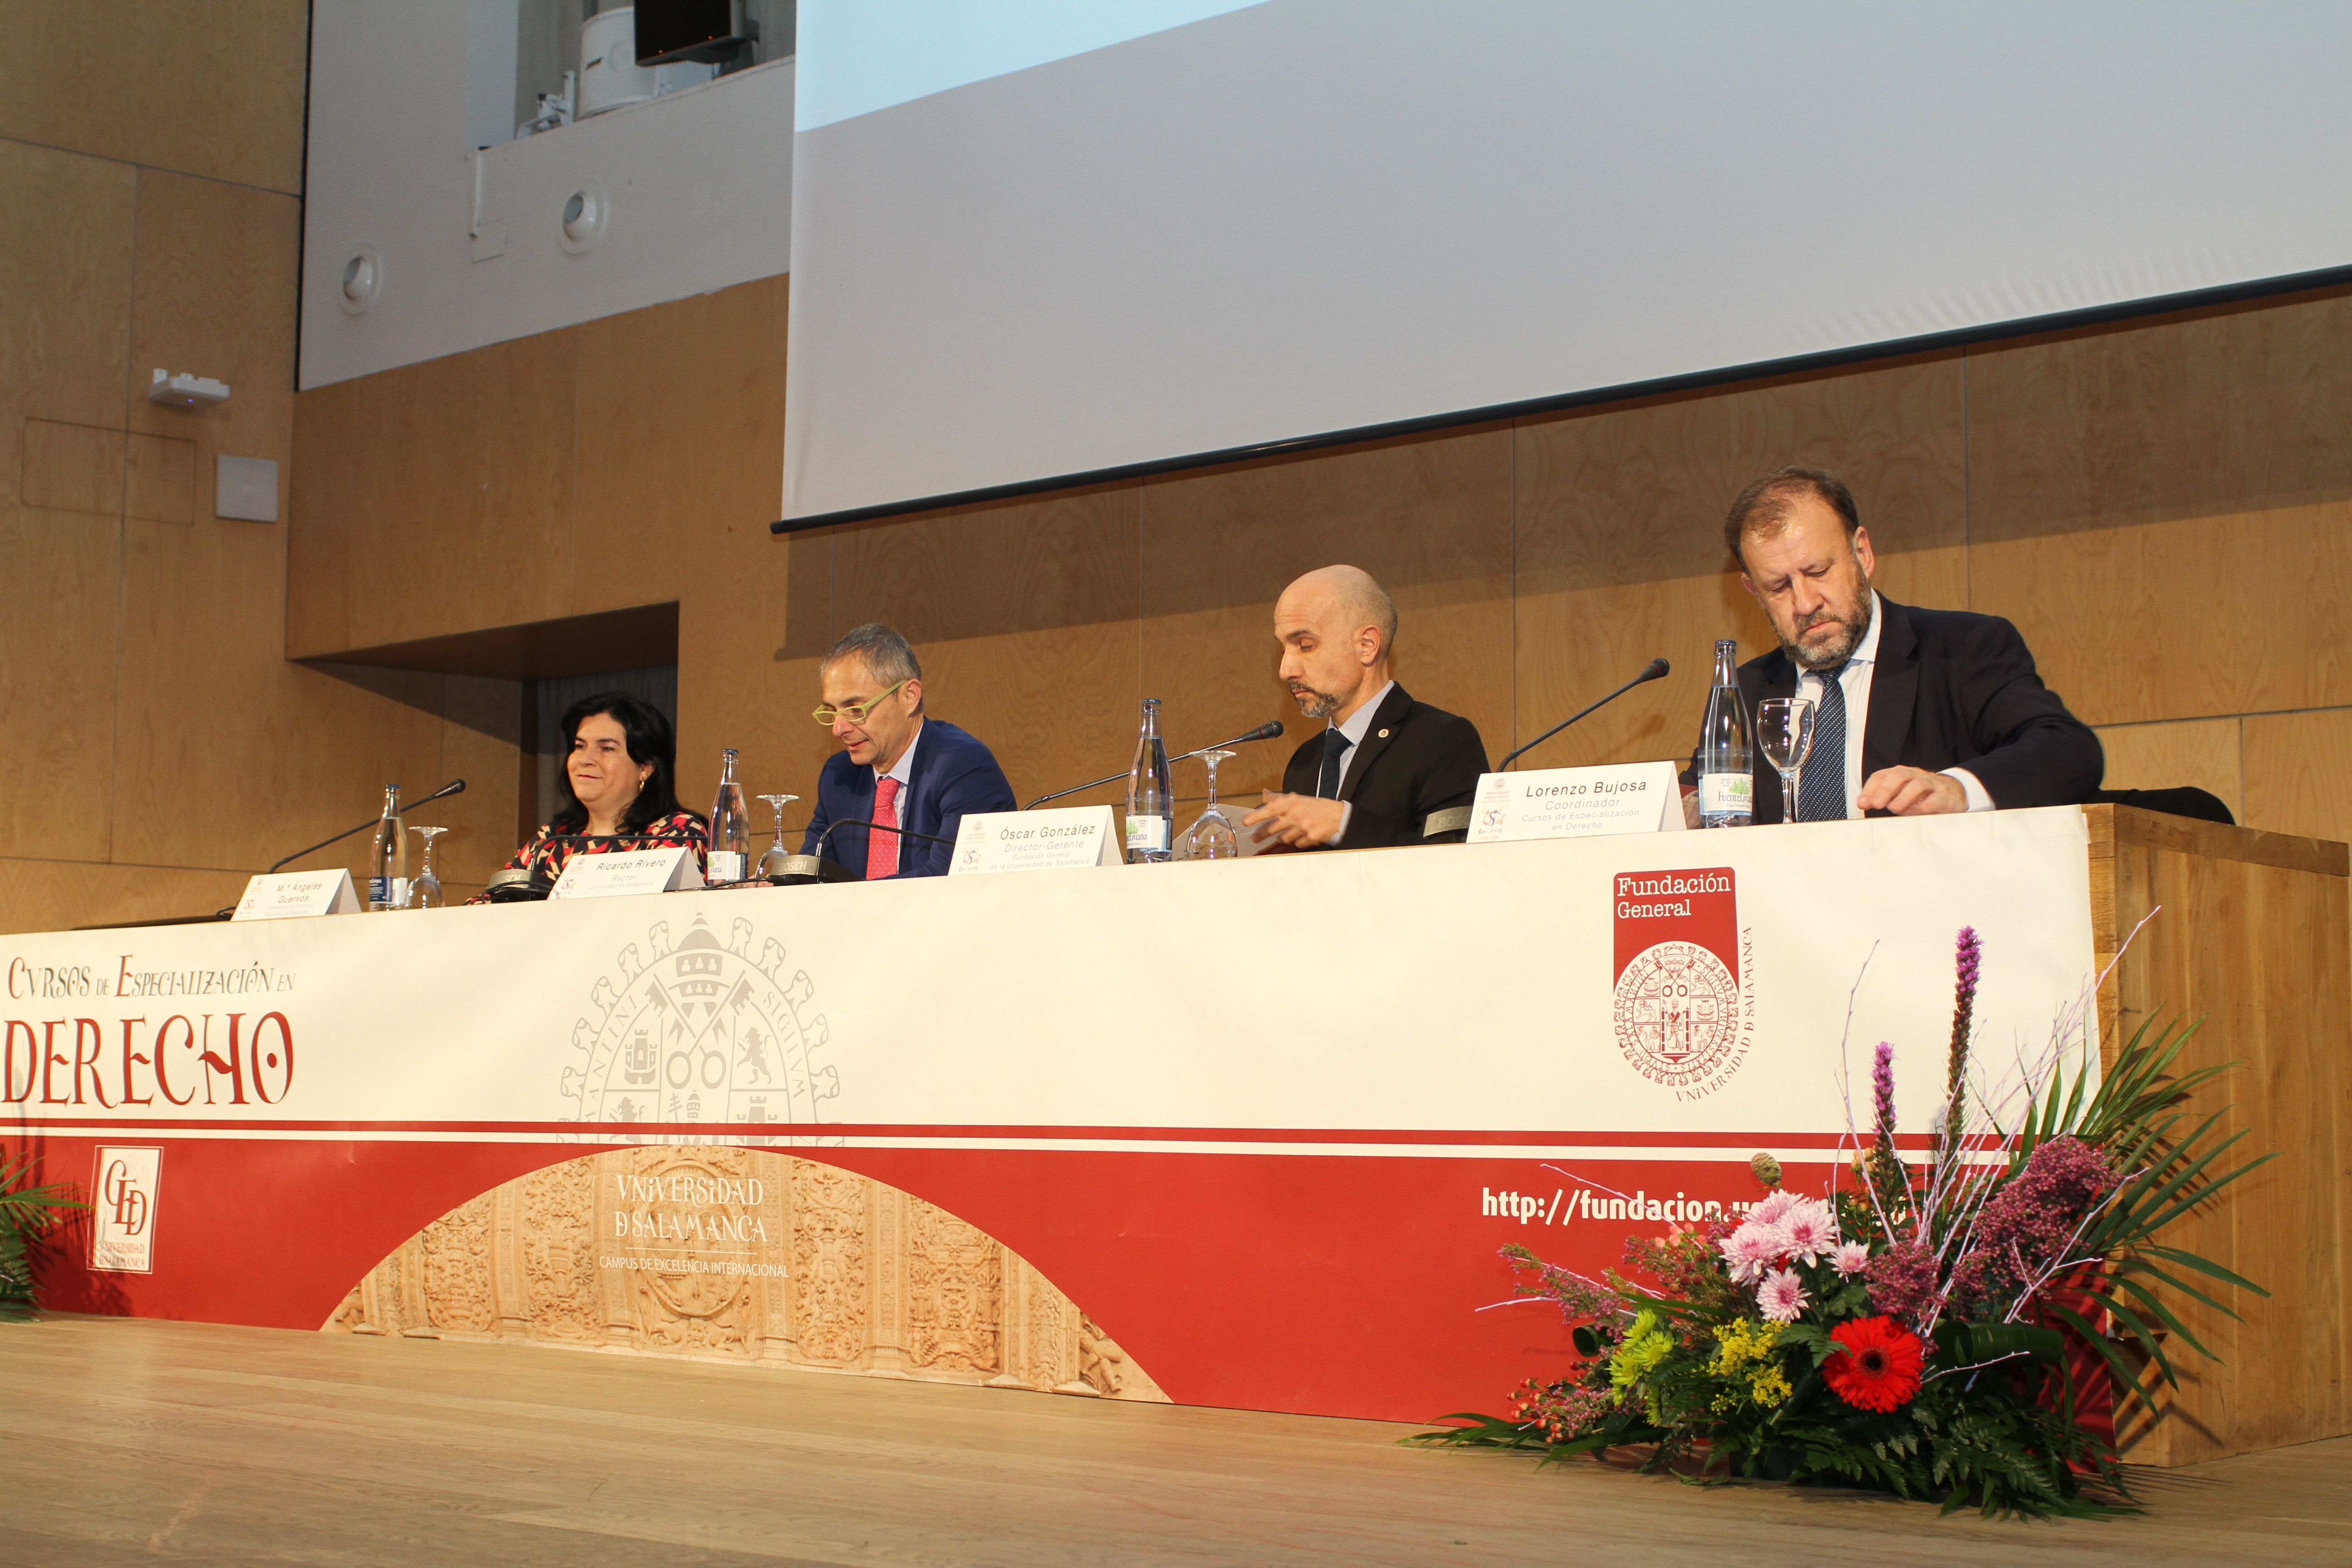 Los XLVI Cursos de Especialización en Derecho de la Universidad de Salamanca reciben a 300 alumnos latinoamericanos